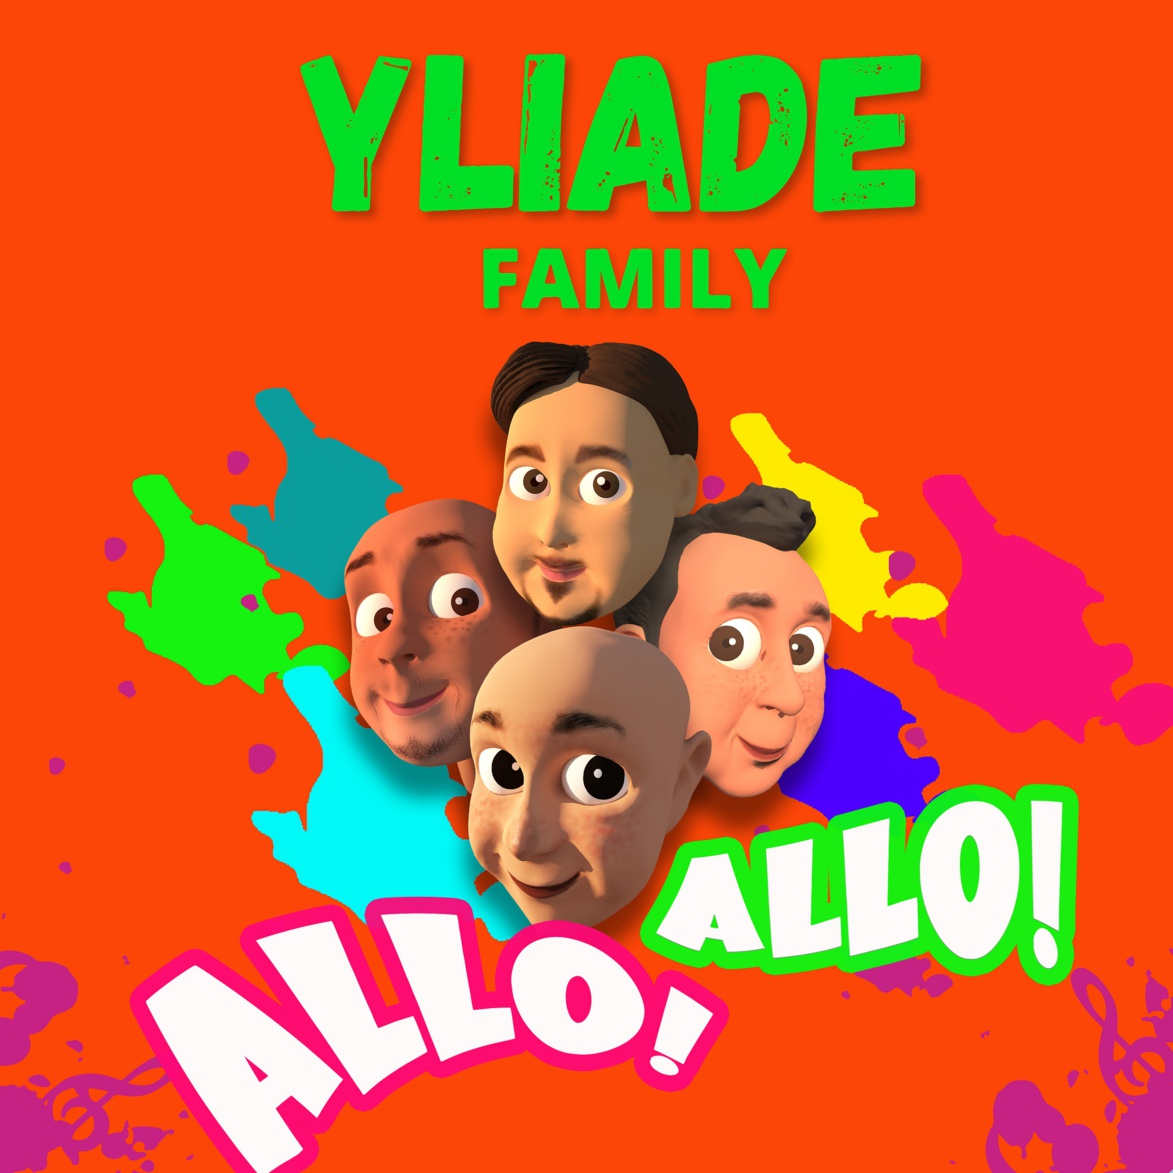 Yliade Family à glisser dans sa playlist d'été avec Allô Allô